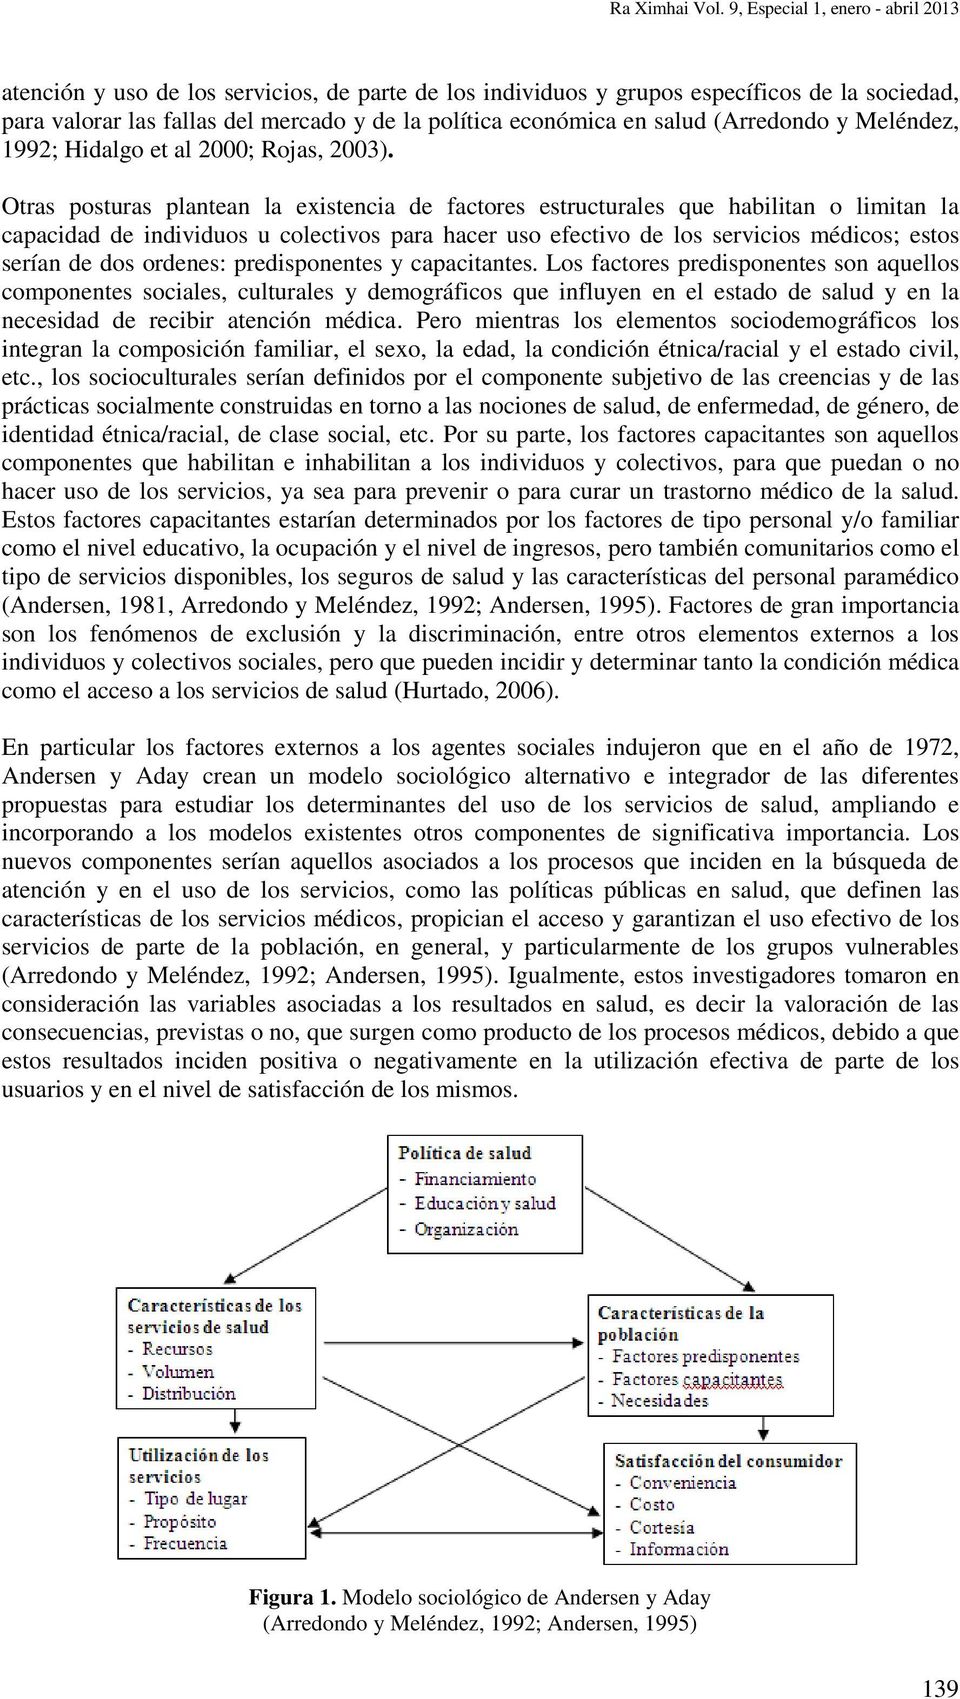 salud (Arredondo y Meléndez, 1992; Hidalgo et al 2000; Rojas, 2003).